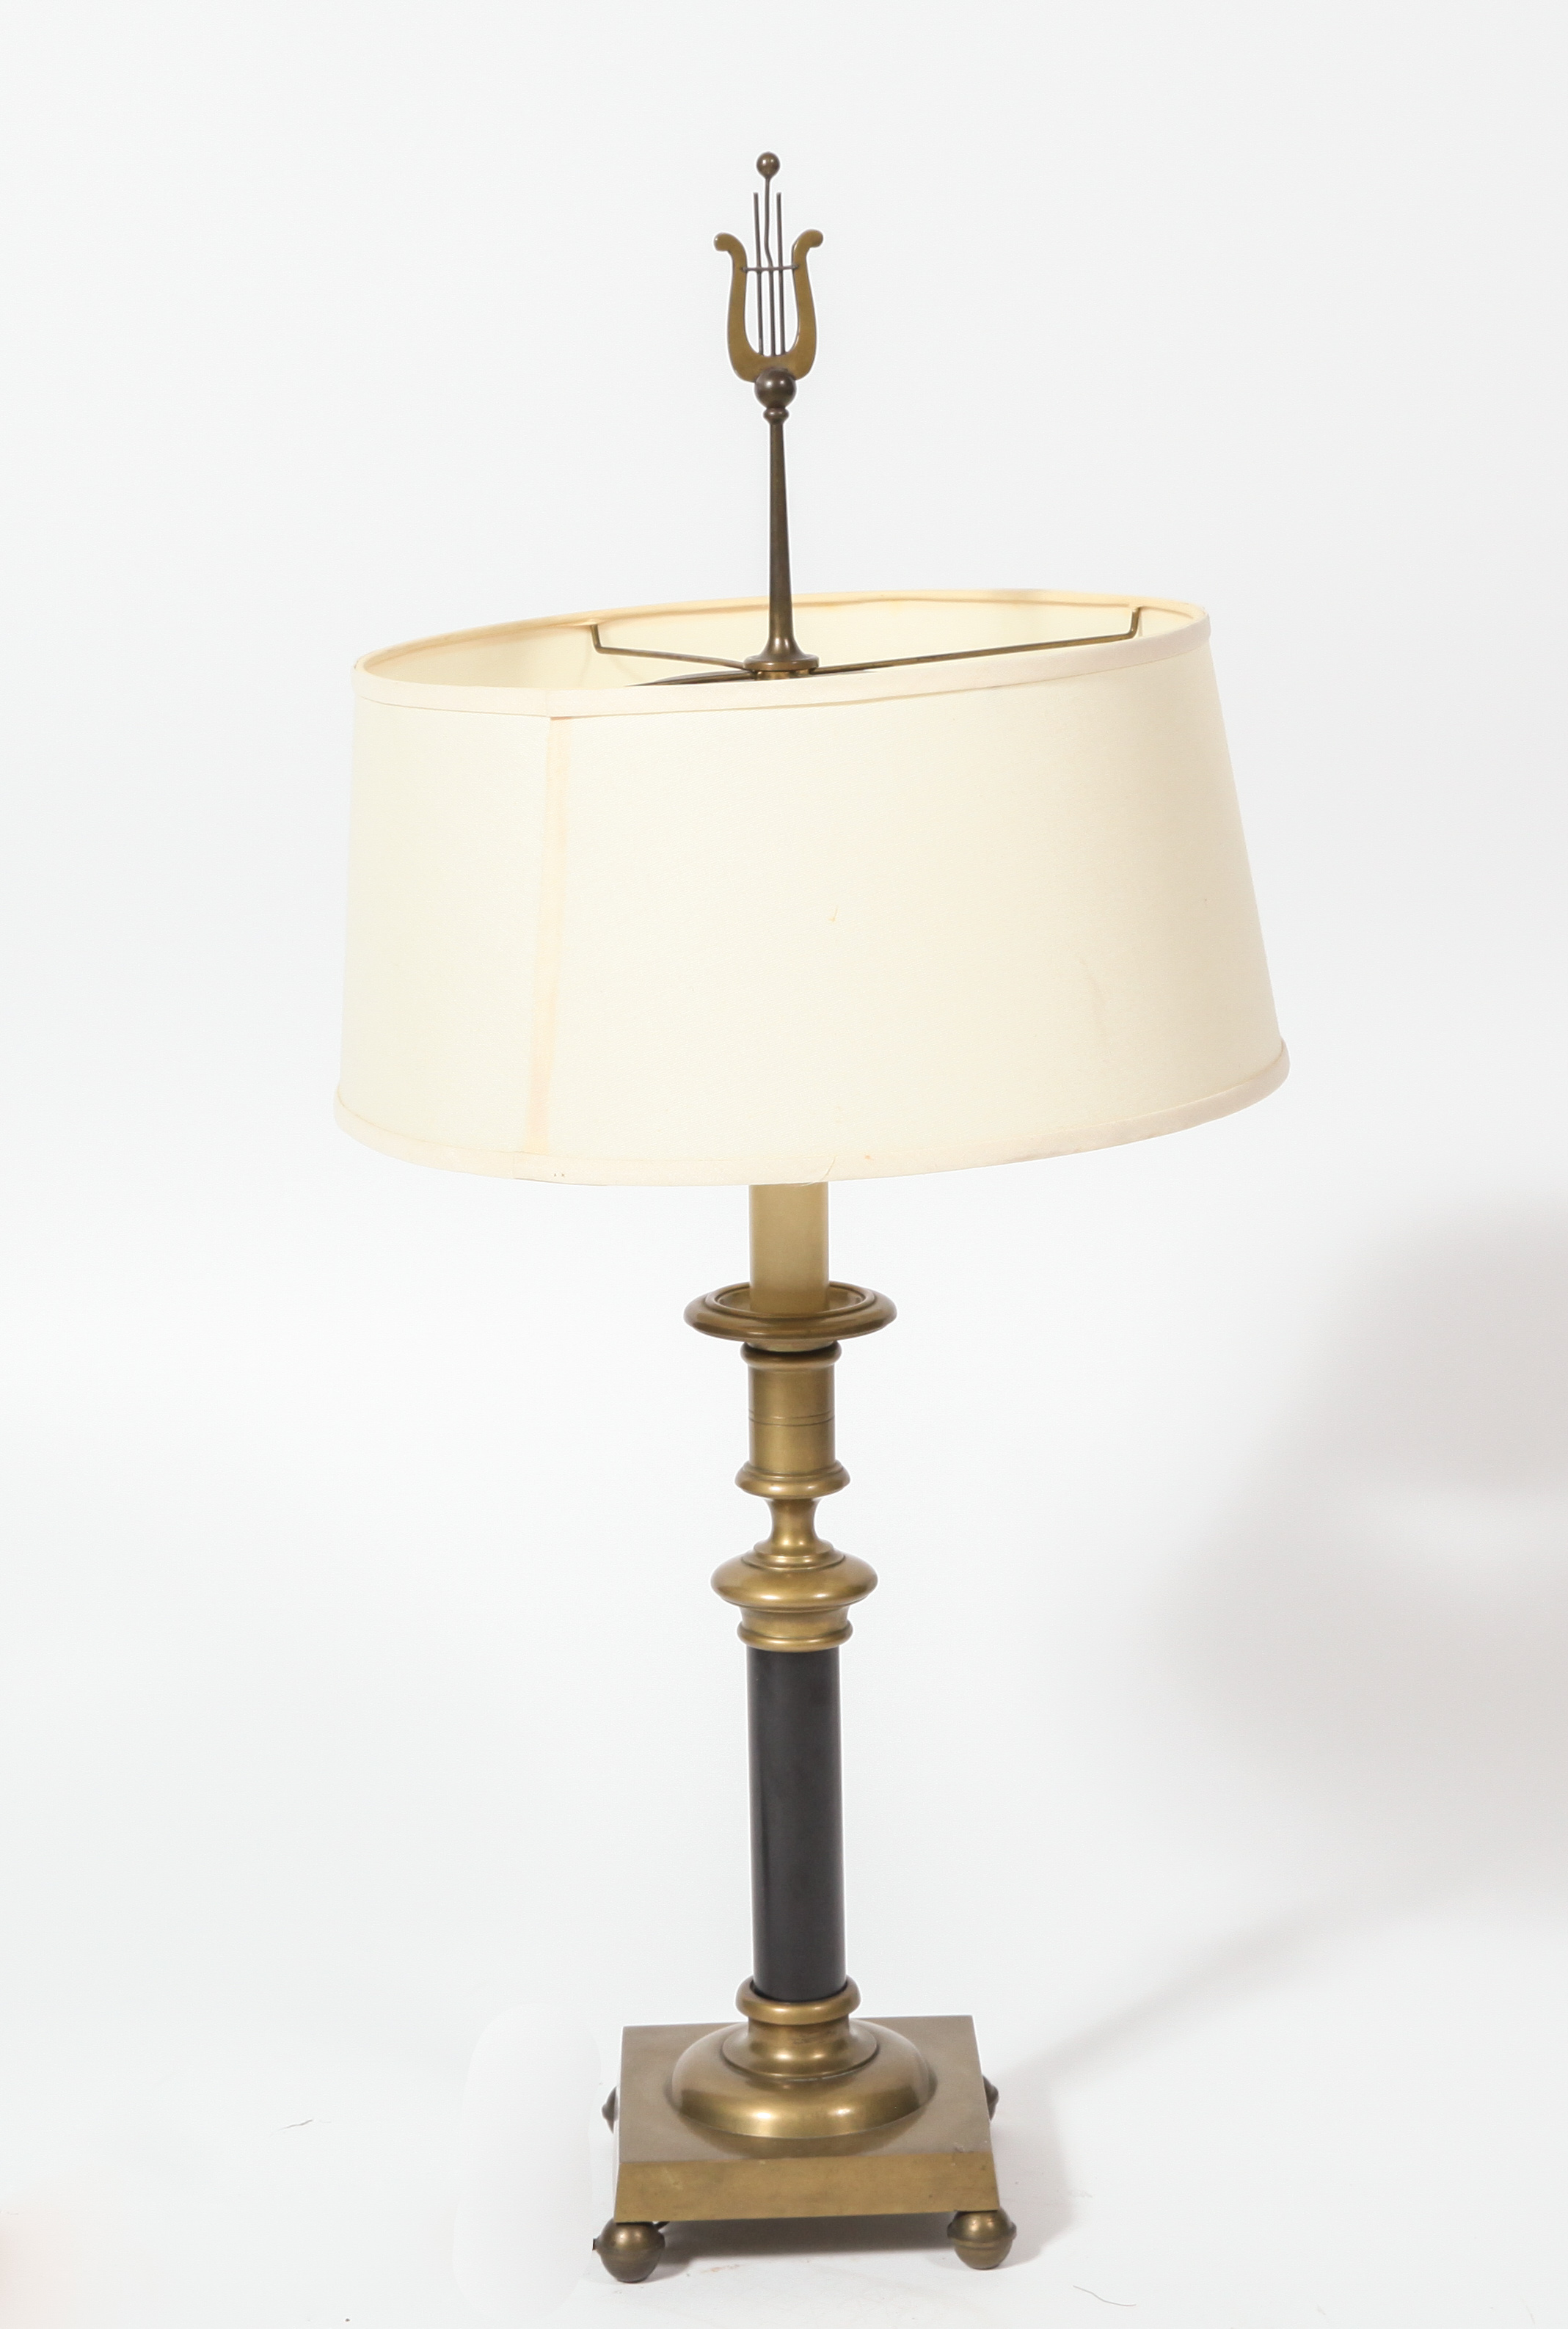 REGENCY MANNER BRASS TABLE LAMP 3c3e44